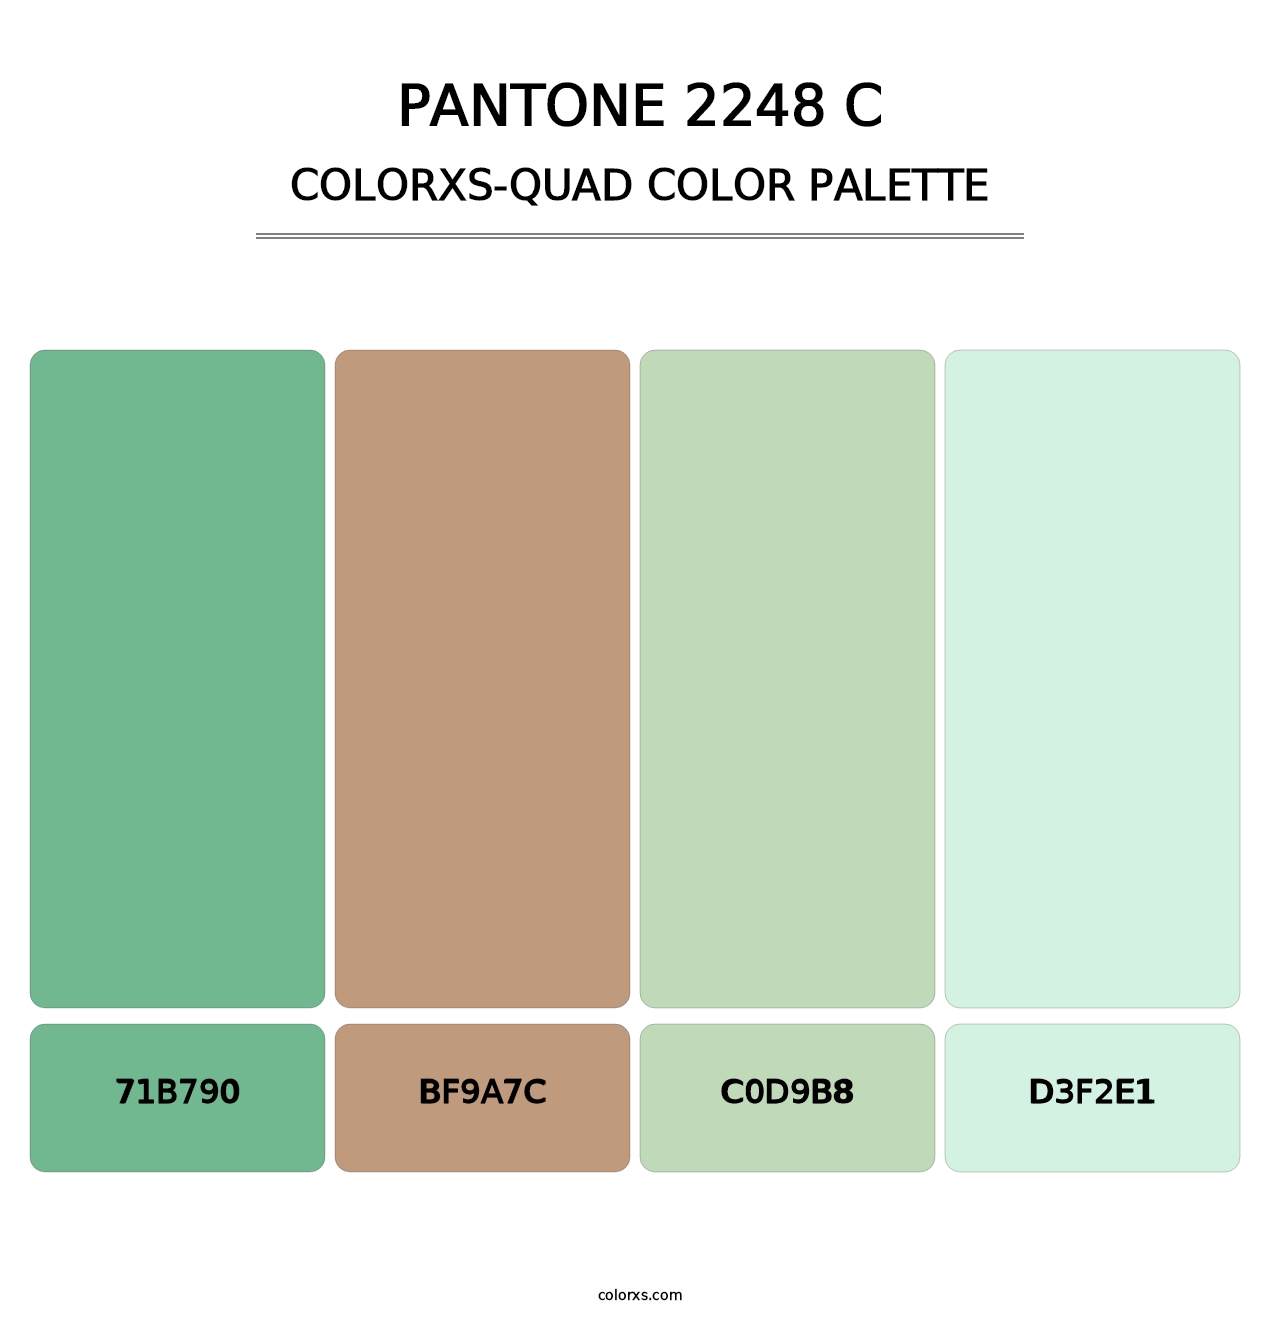 PANTONE 2248 C - Colorxs Quad Palette